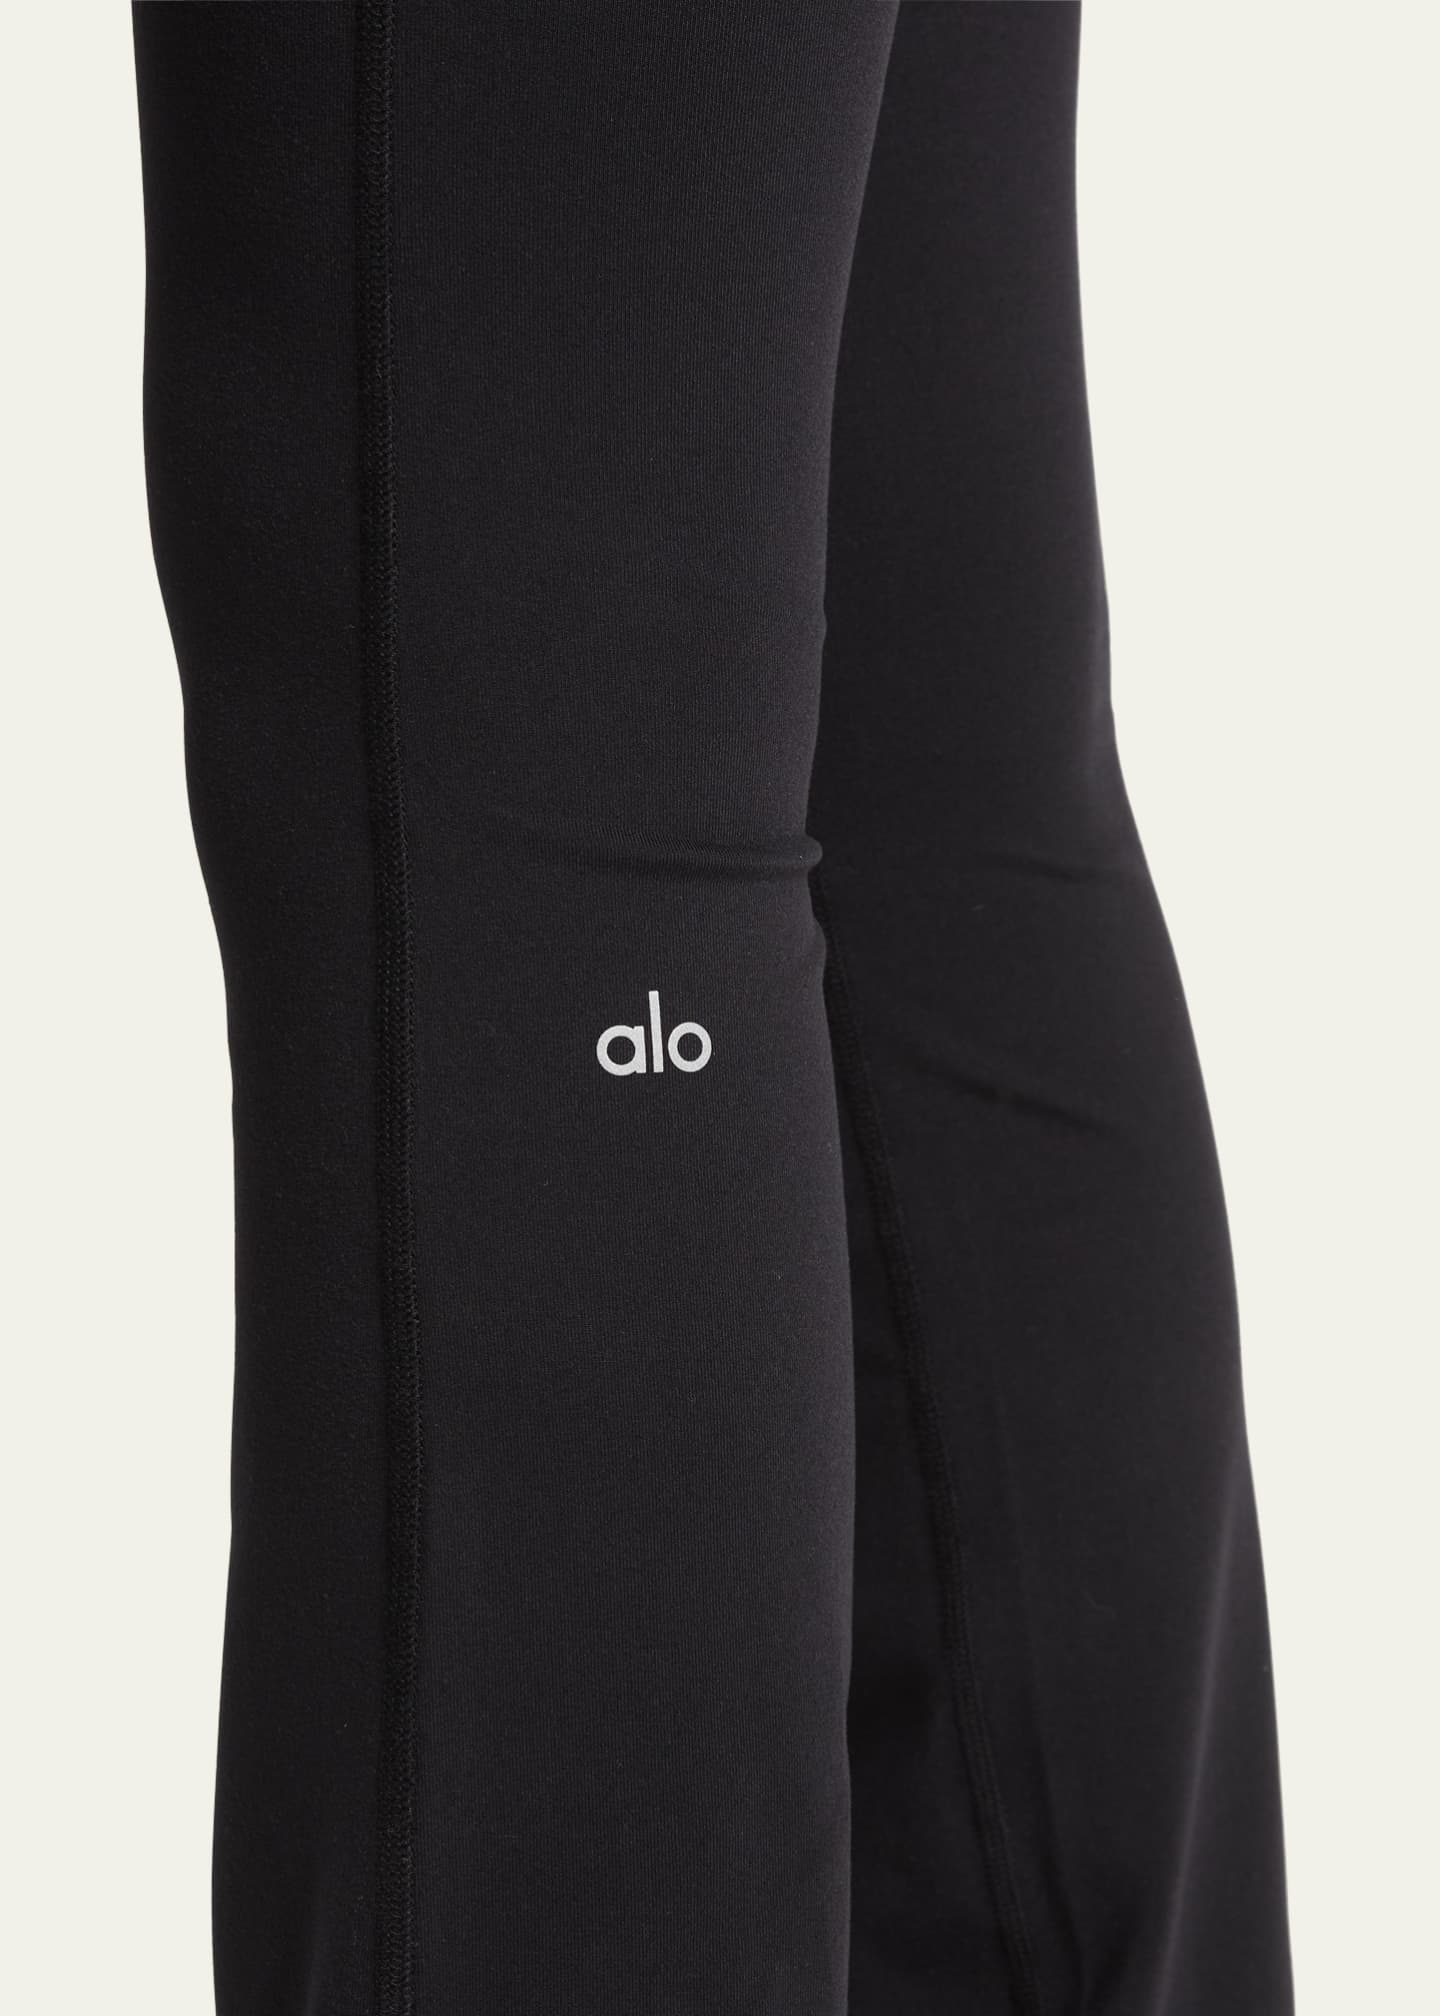 Alo Yoga Airbrush High-Waist Bootcut Leggings